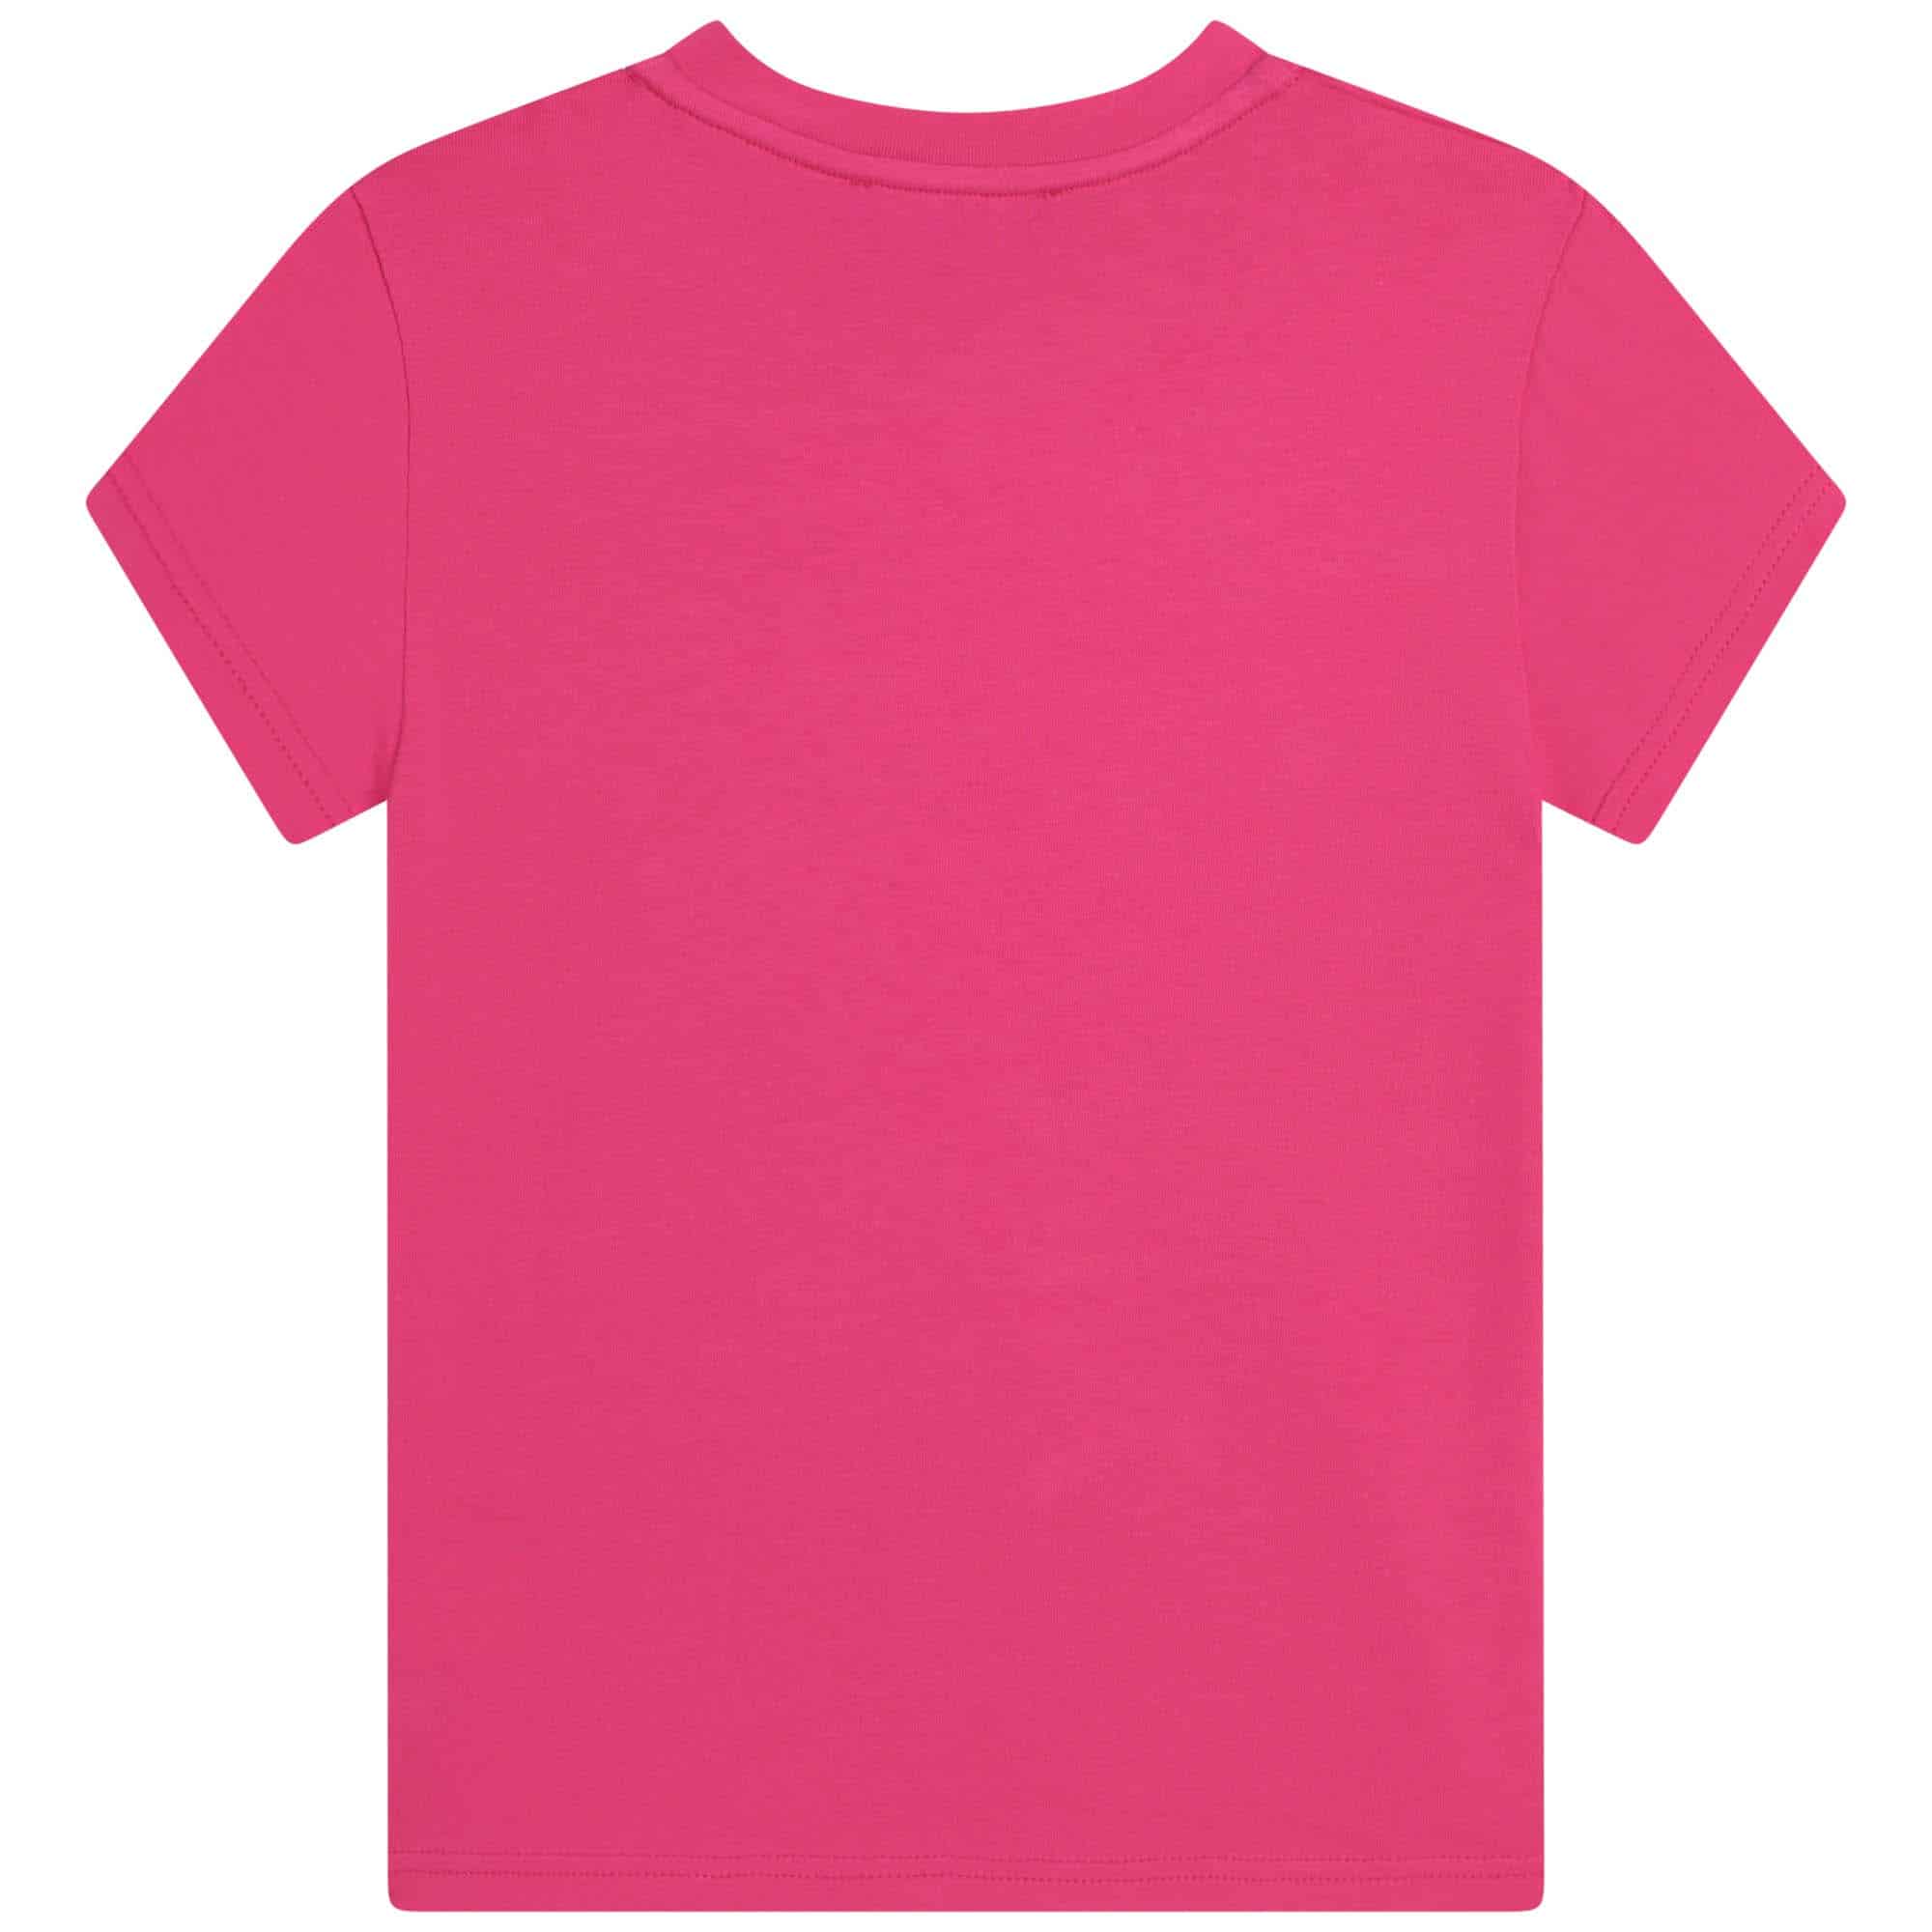 DKNY girls pink tshirt back view